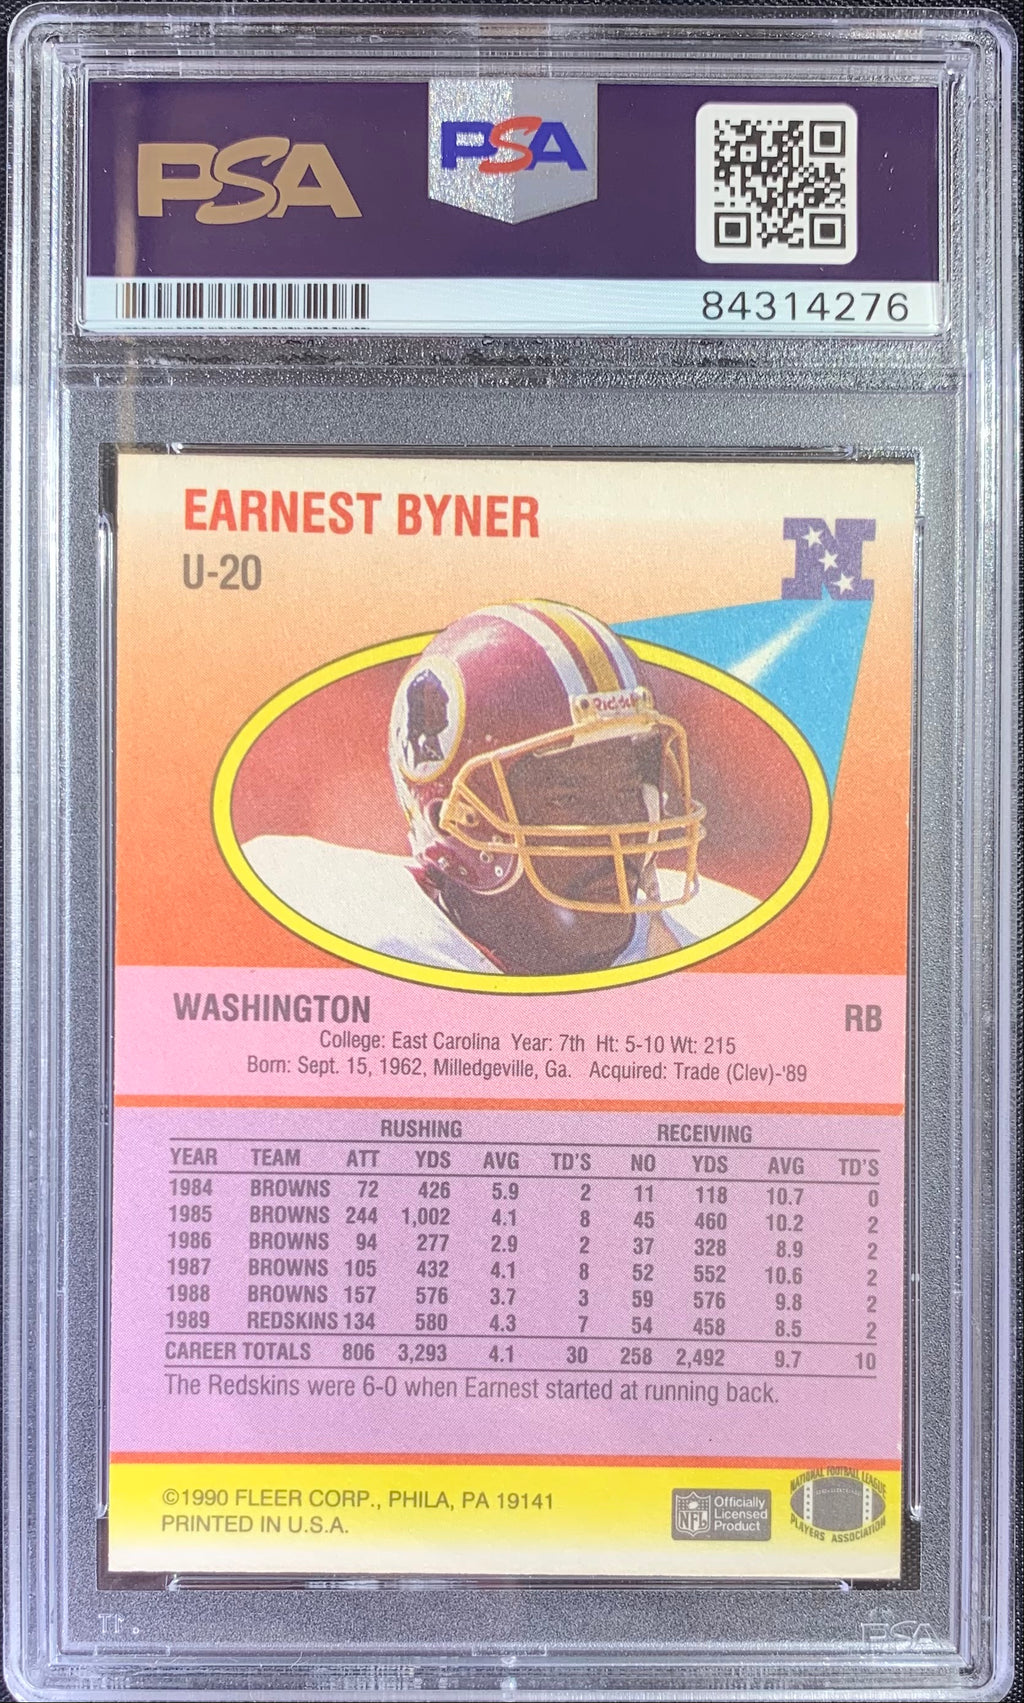 Earnest Byner autographed signed 1990 Fleer card #U-20 Redskins PSA Encapsulated